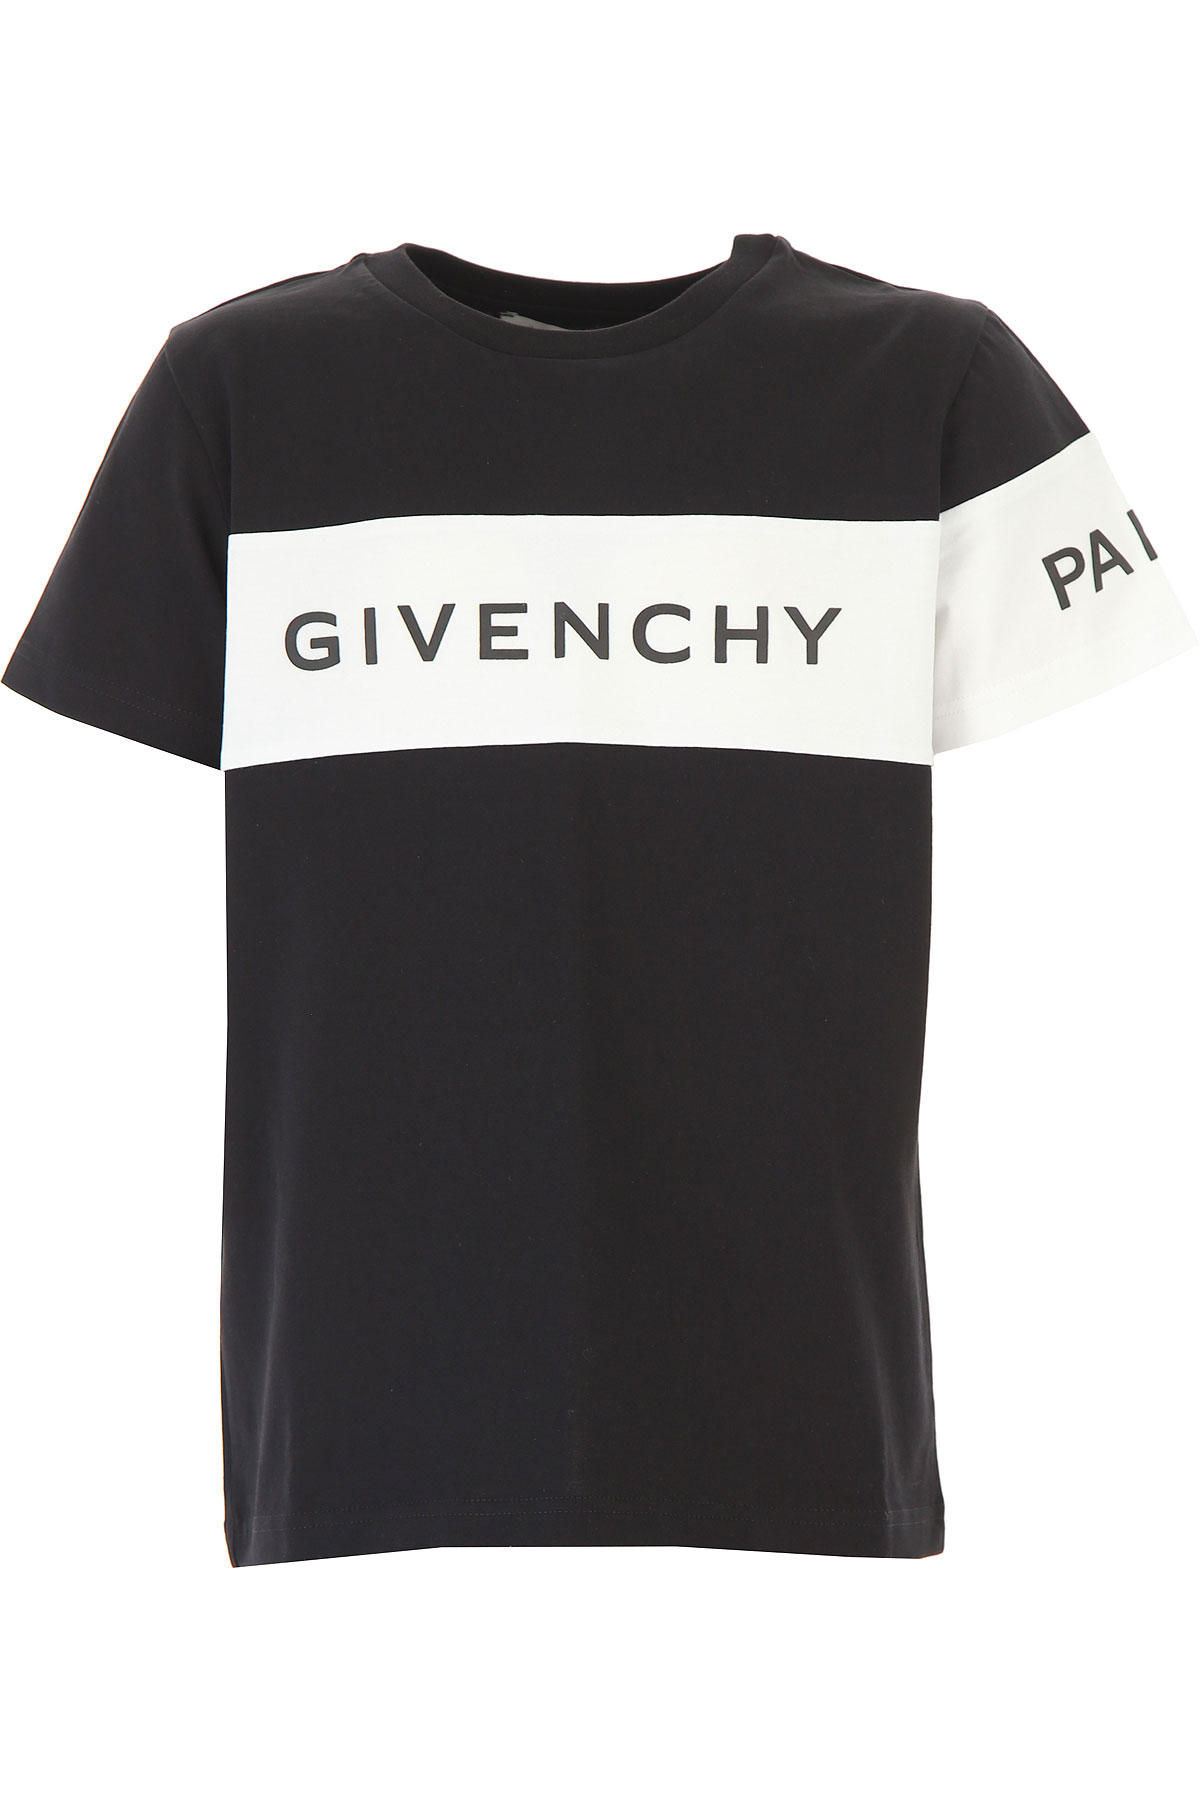 Givenchy Kinder T-Shirt für Jungen Günstig im Sale, Schwarz, Baumwolle, 2017, 10Y 4Y 6Y 8Y